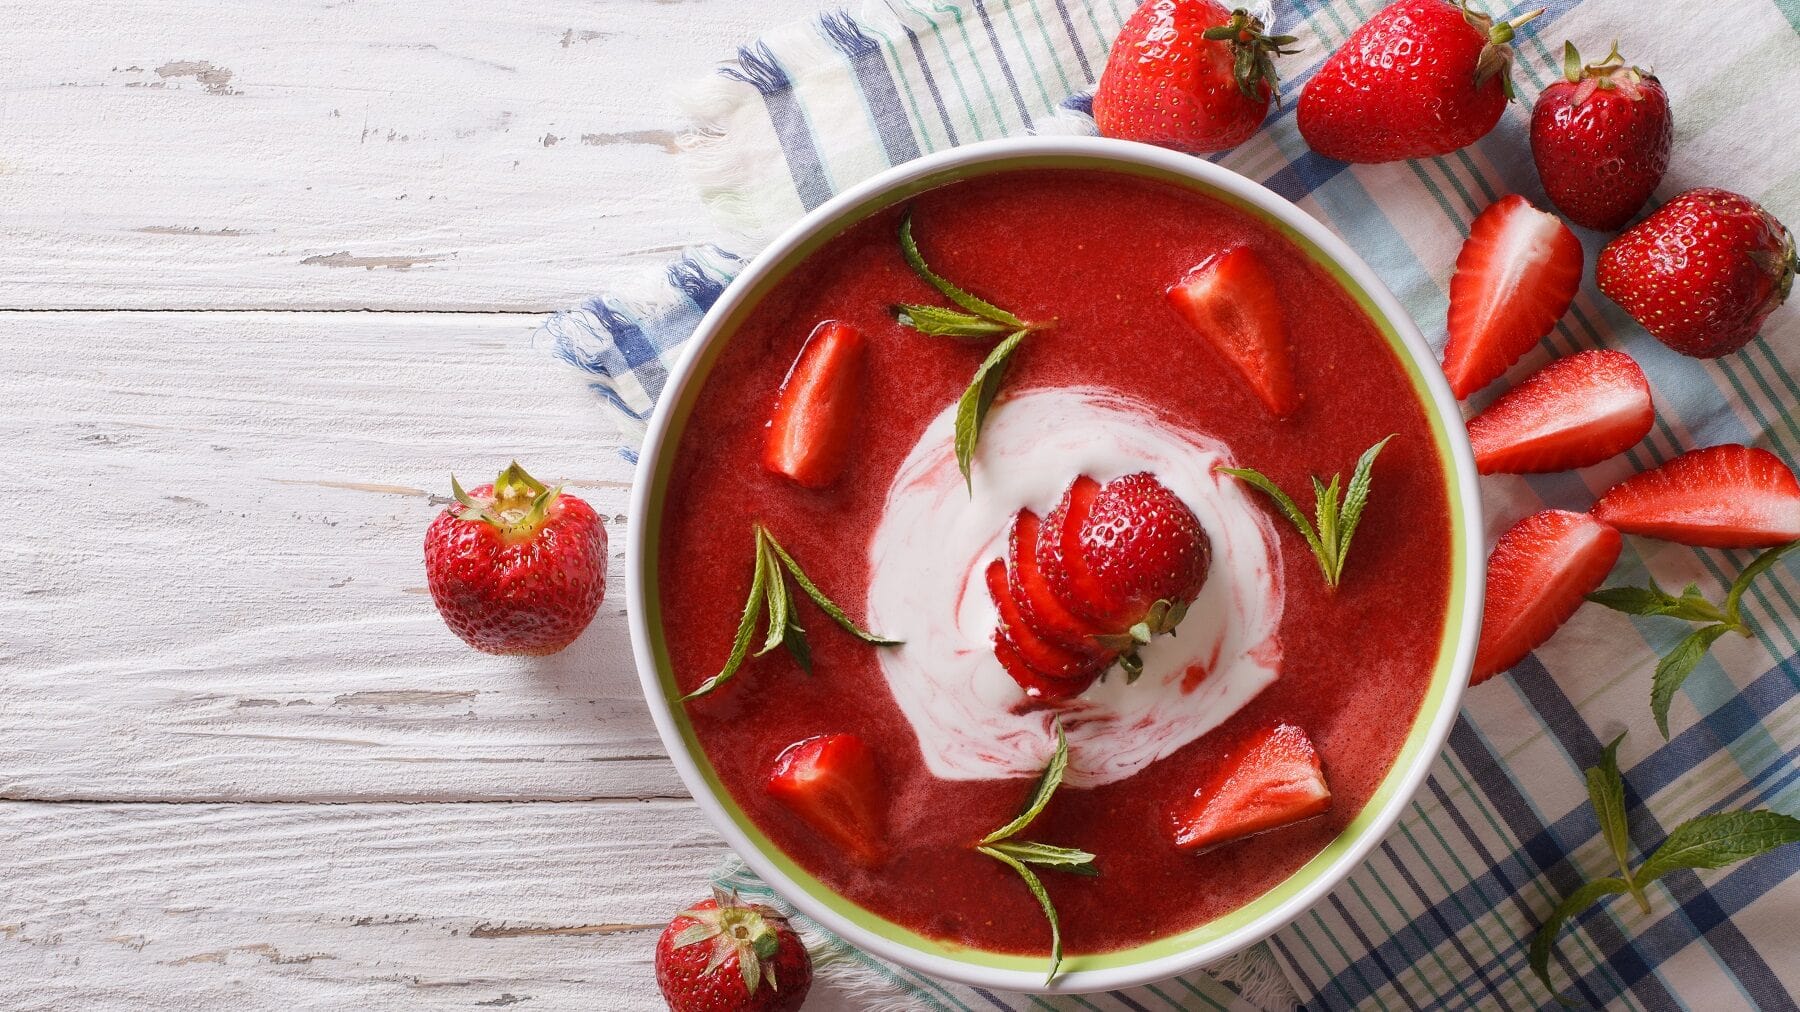 Erdbeersuppe mit frischen Erdbeeren, Quark und Minze in einer weißen Schüssel auf einem weißen Tisch mit einem Geschirrtuch und frischen Erdbeeren.